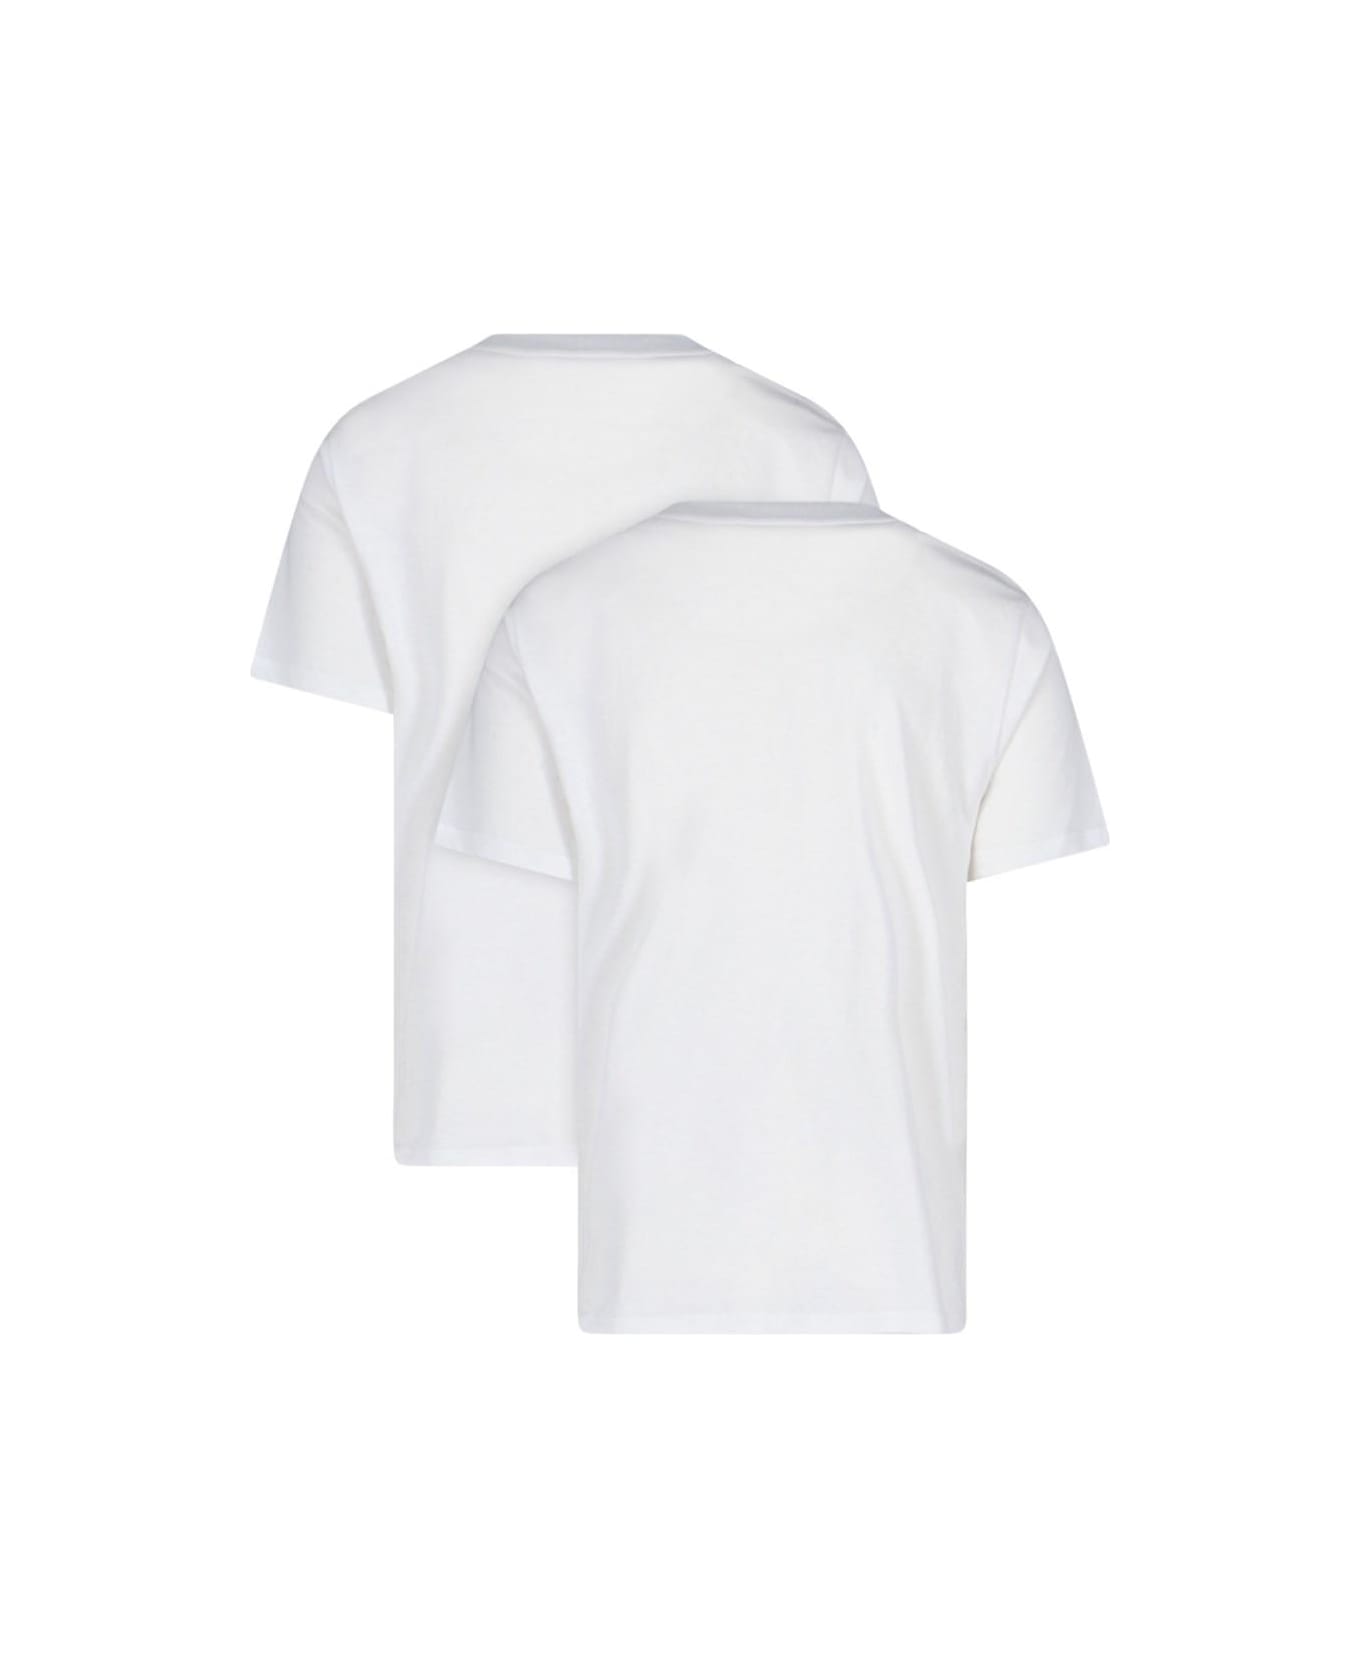 Carhartt WIP '2-pack' T-shirt Set - White